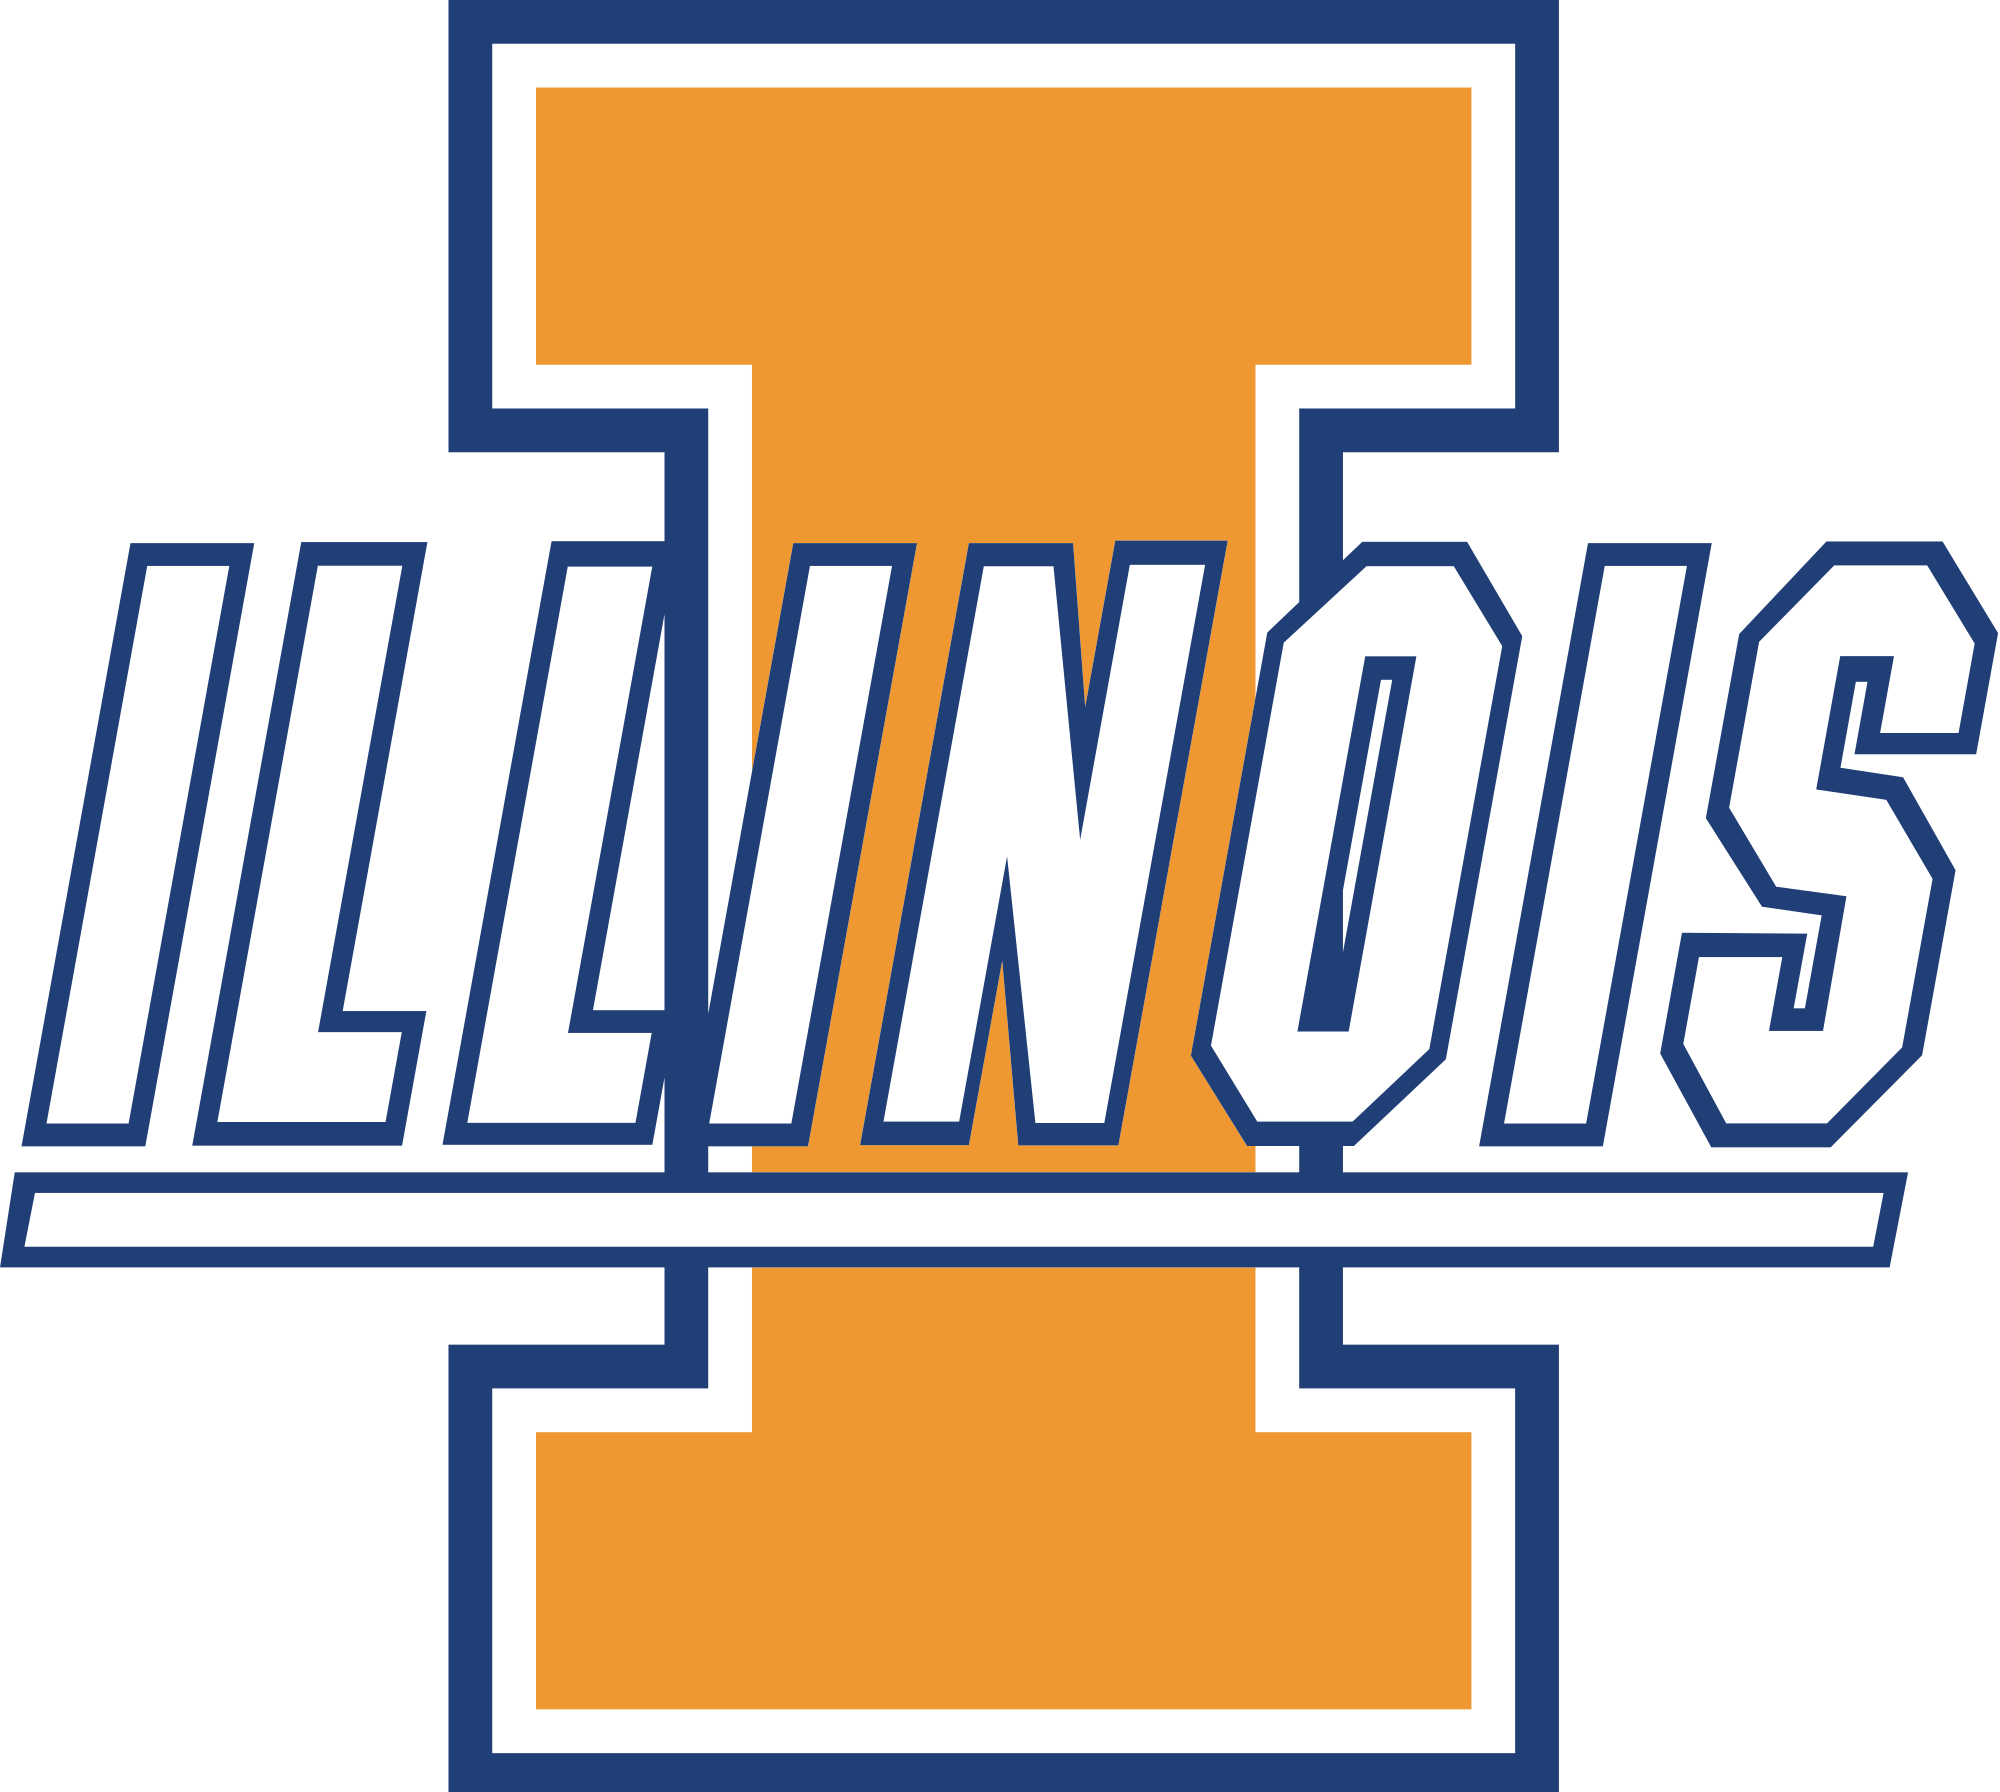 Illinois Fighting Illini Logo (2000x1792)